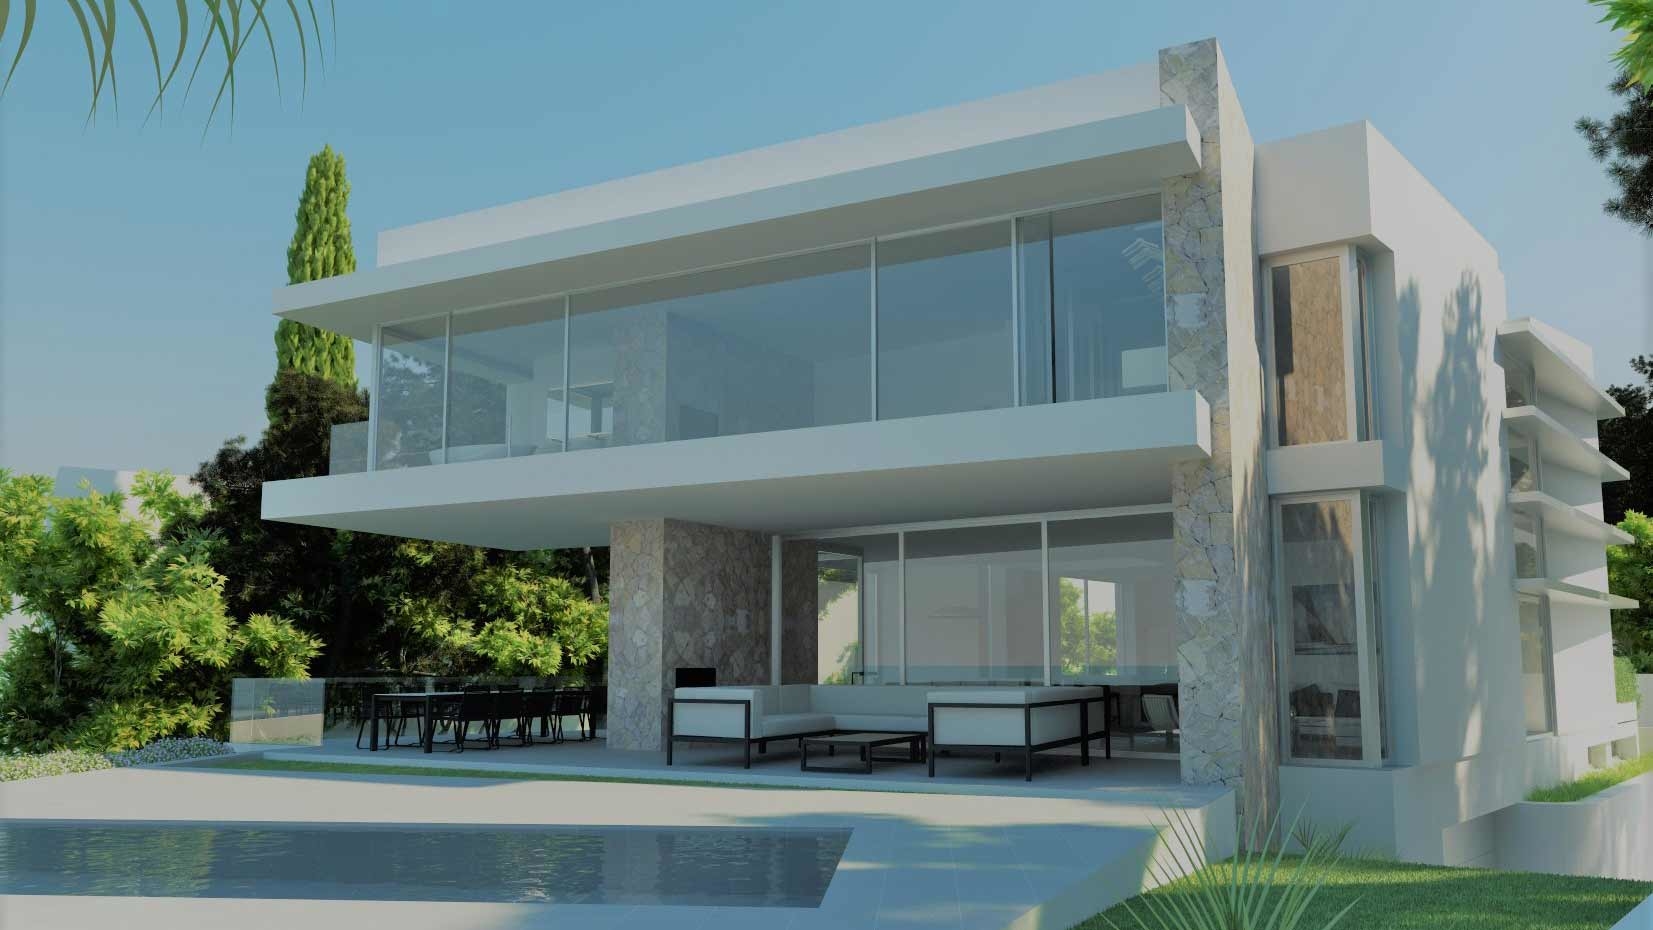 Villa de diseño en 1ª línea en Puerto Adriano - Fachada trasera de la nueva villa moderna